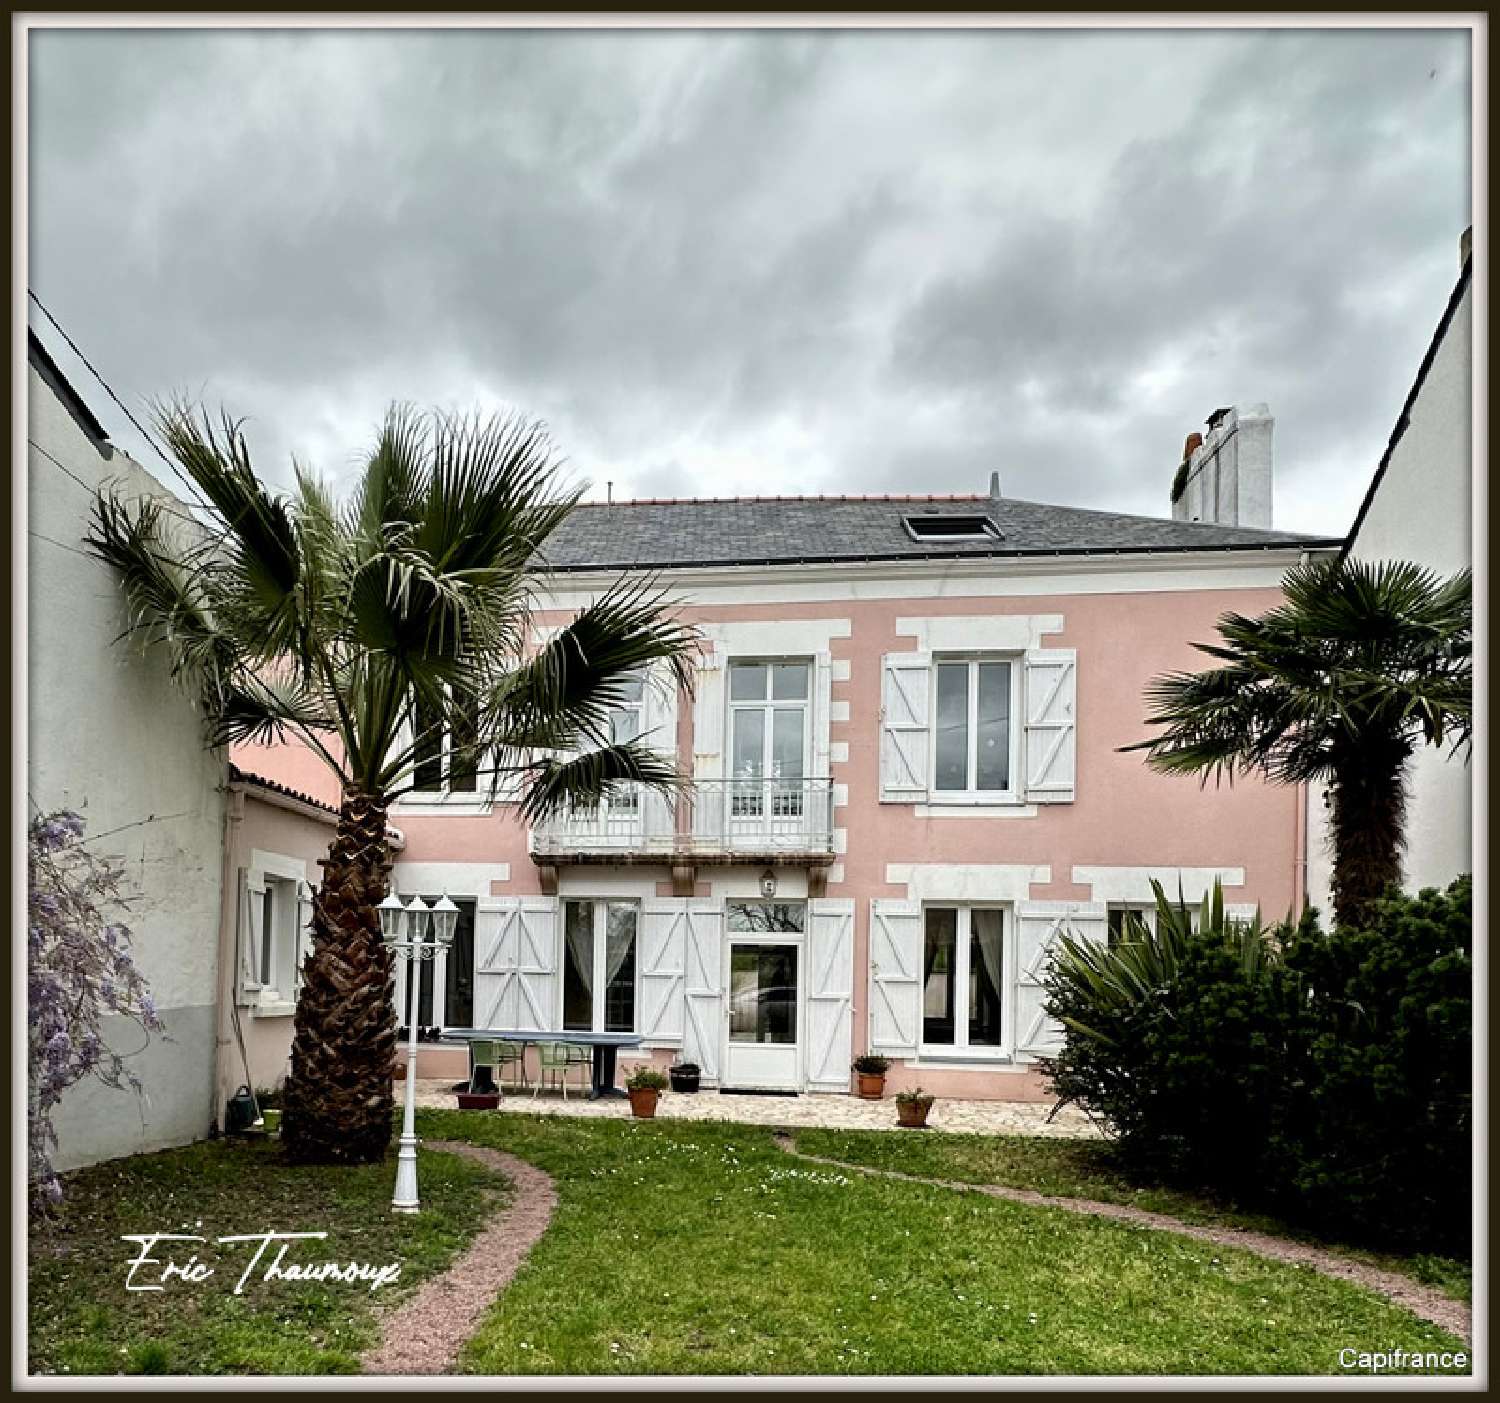  à vendre maison bourgeoise Basse-Indre Loire-Atlantique 1